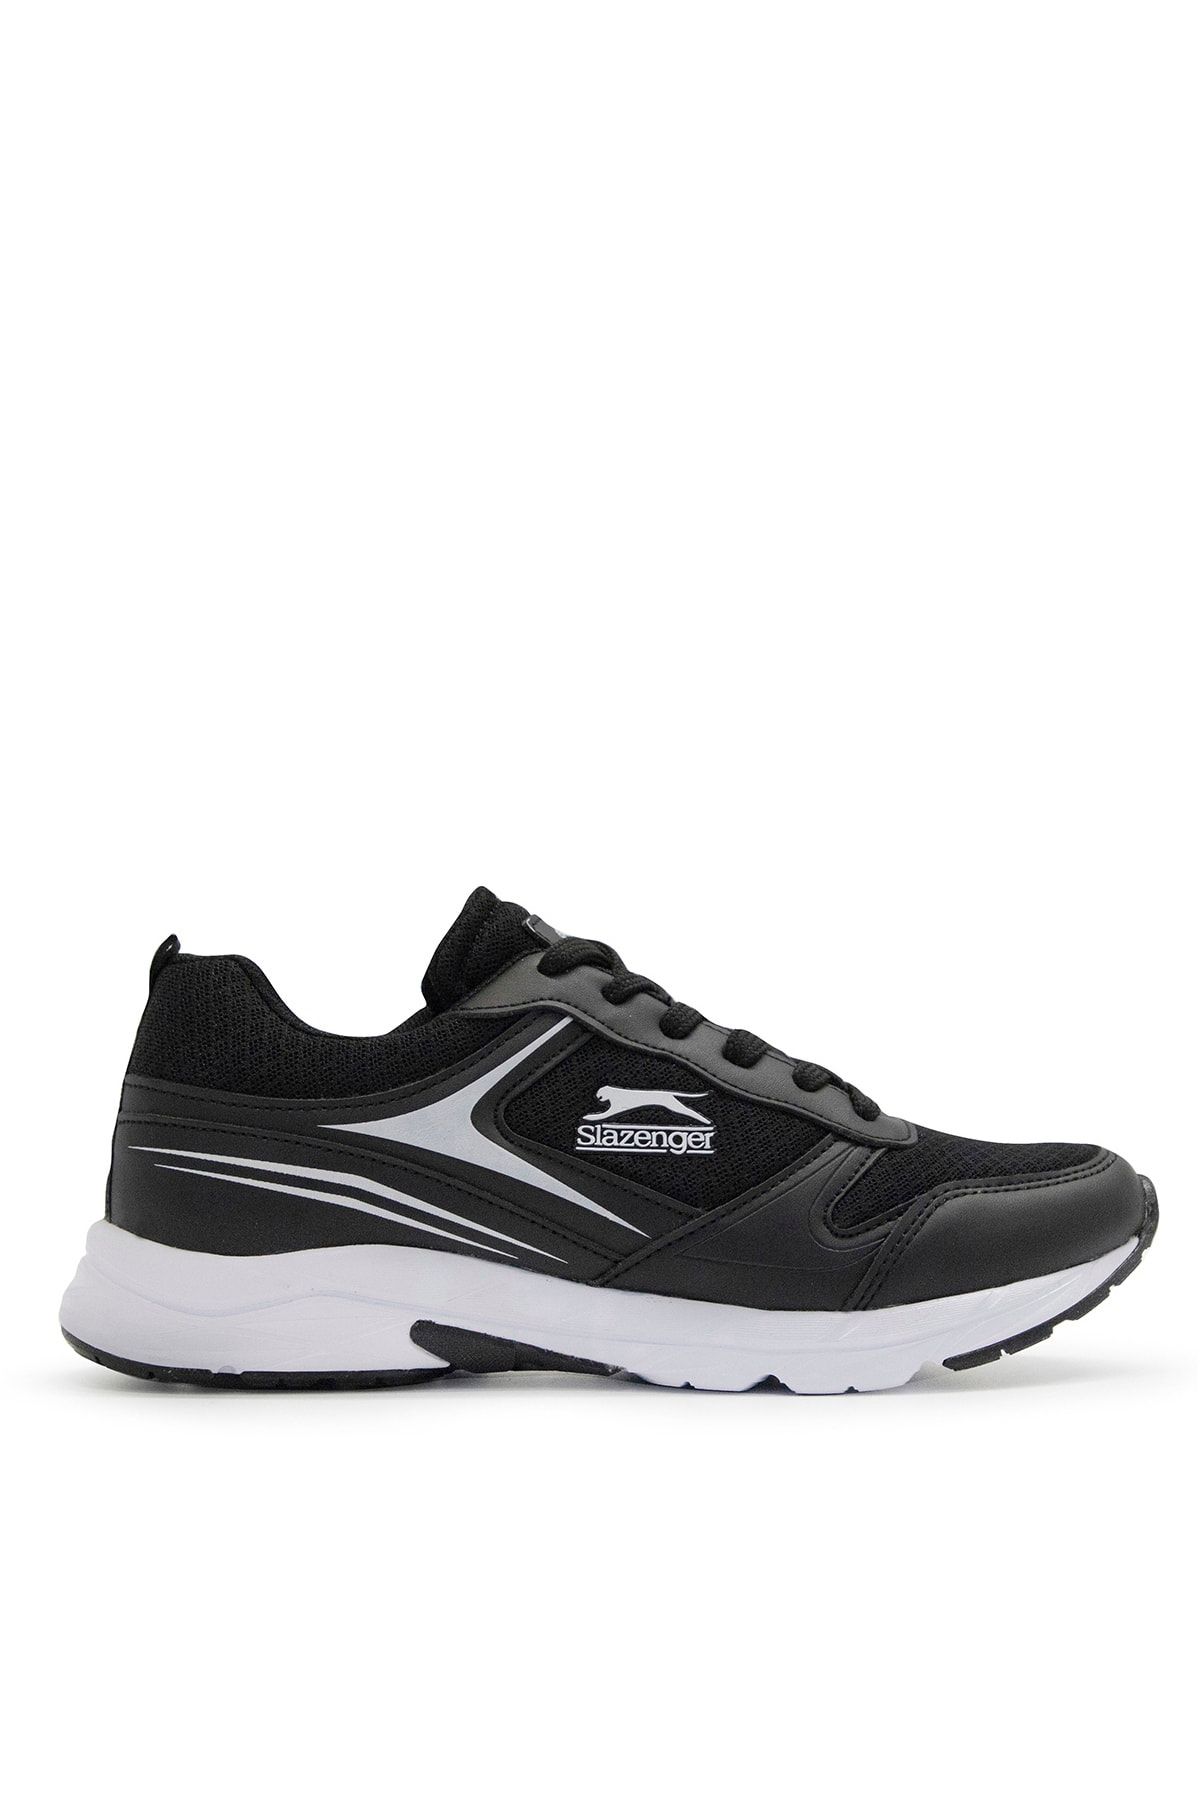 Slazenger Zetel Sneaker Kadın Ayakkabı Siyah / Beyaz Sa11rk006